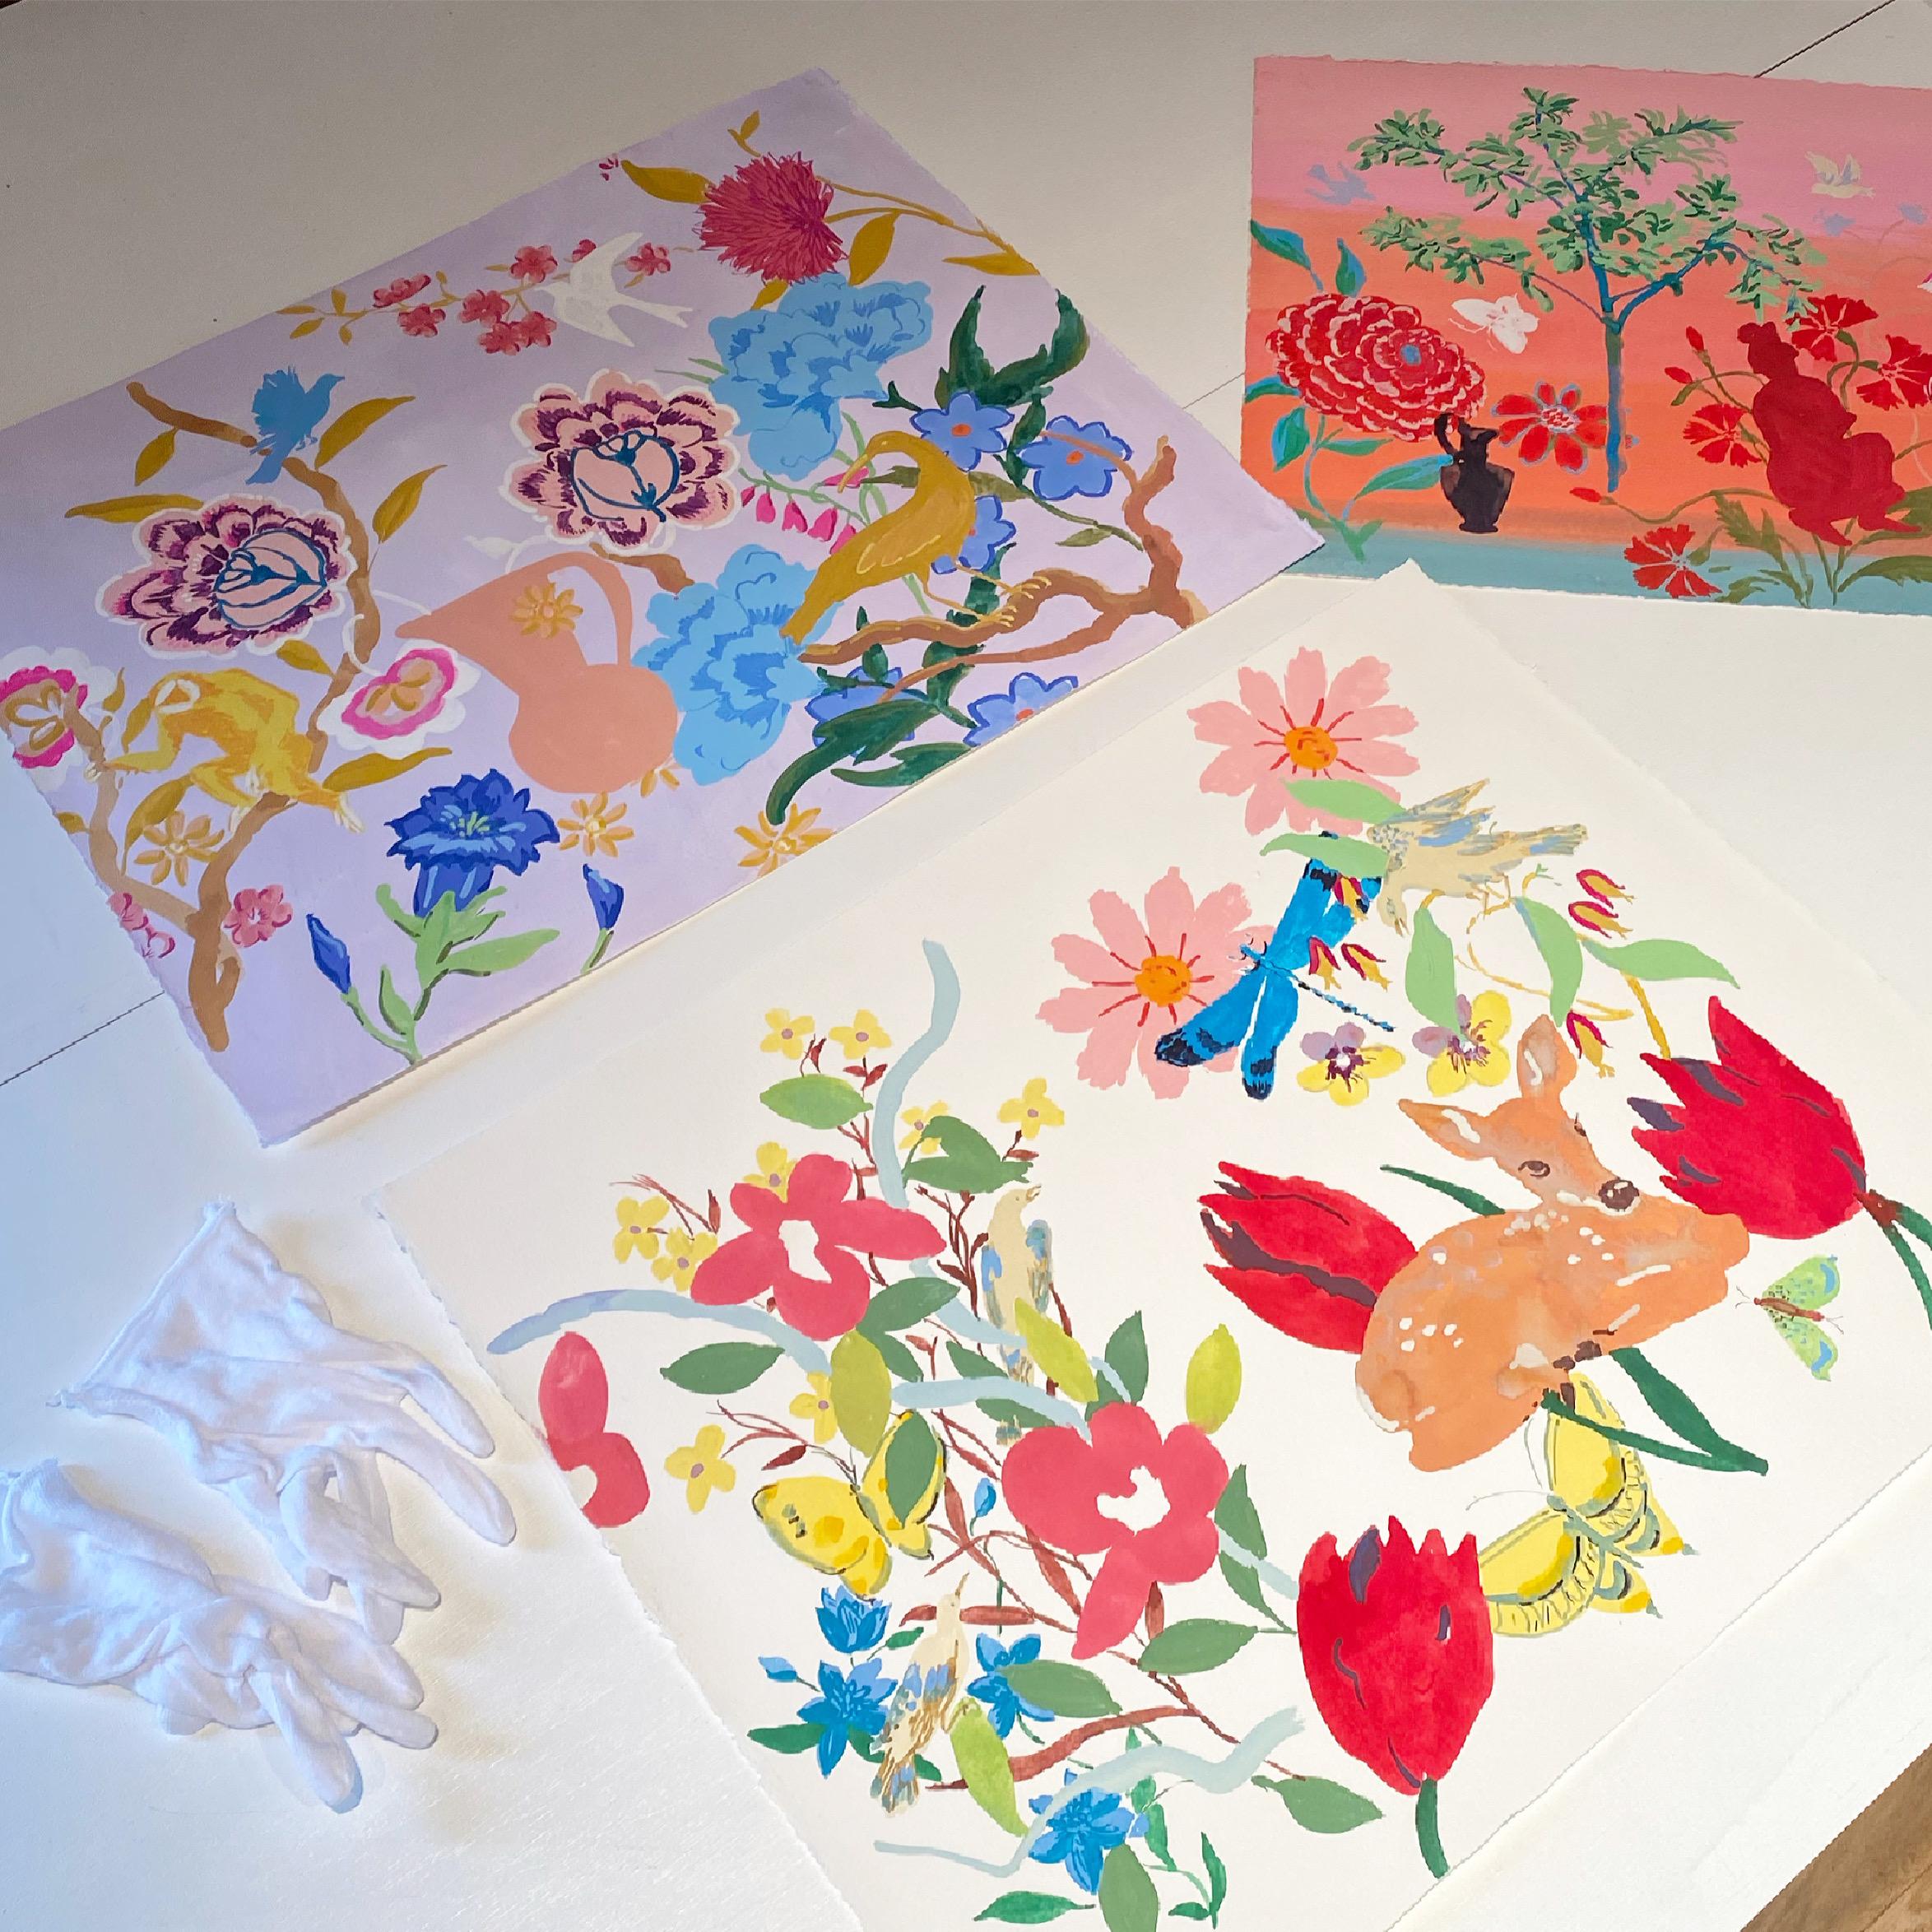 Schildkröten, rosa, rot, gelbe, gelbe Blumen, Pansies, Vögel, Schmetterling, Hirsch auf Weiß – Painting von Melanie Parke